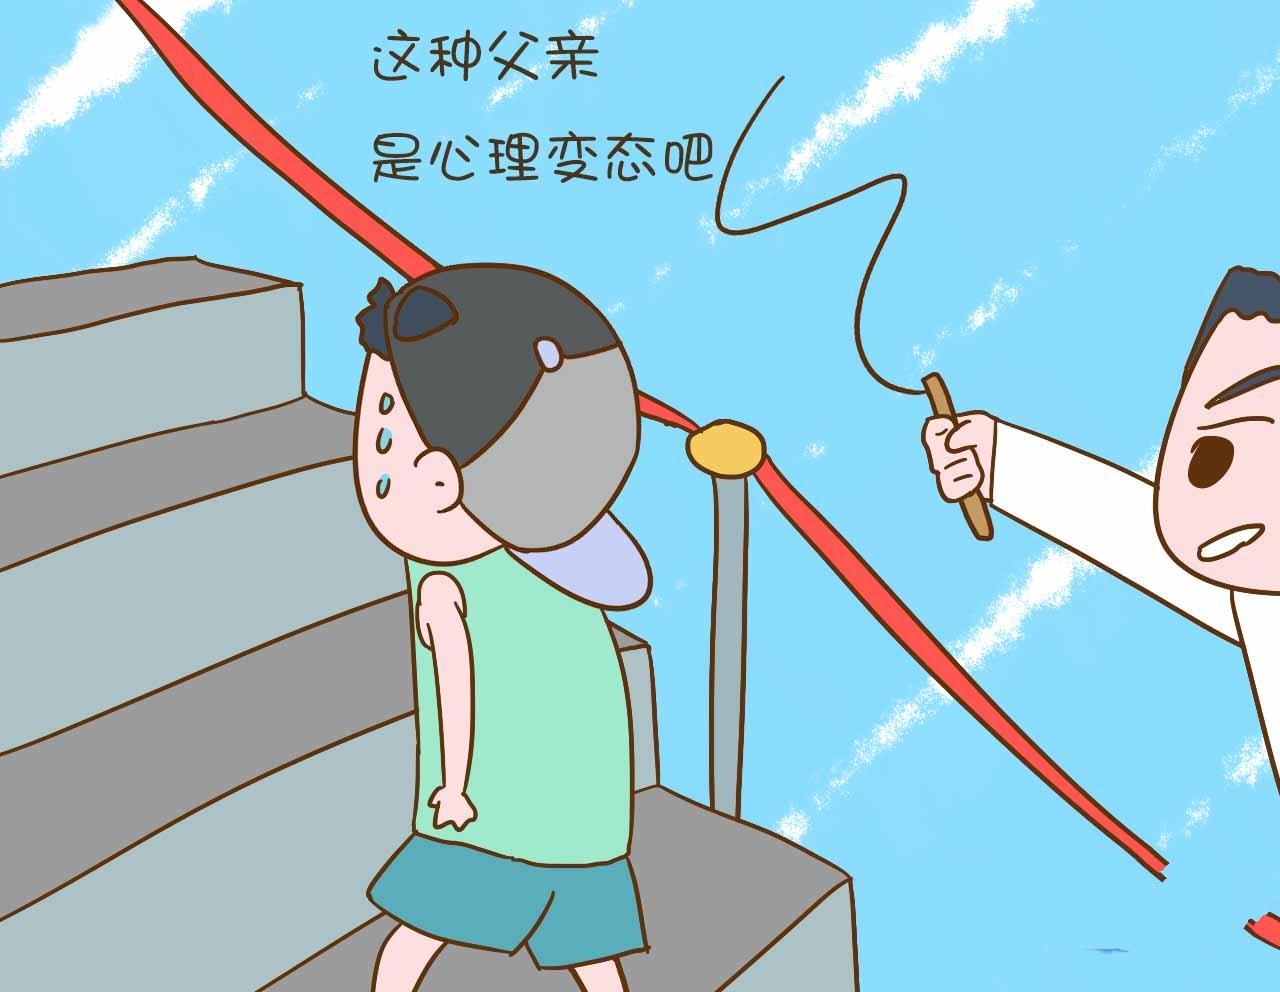 老爸用竹条鞭策儿子爬天梯,到底是教育